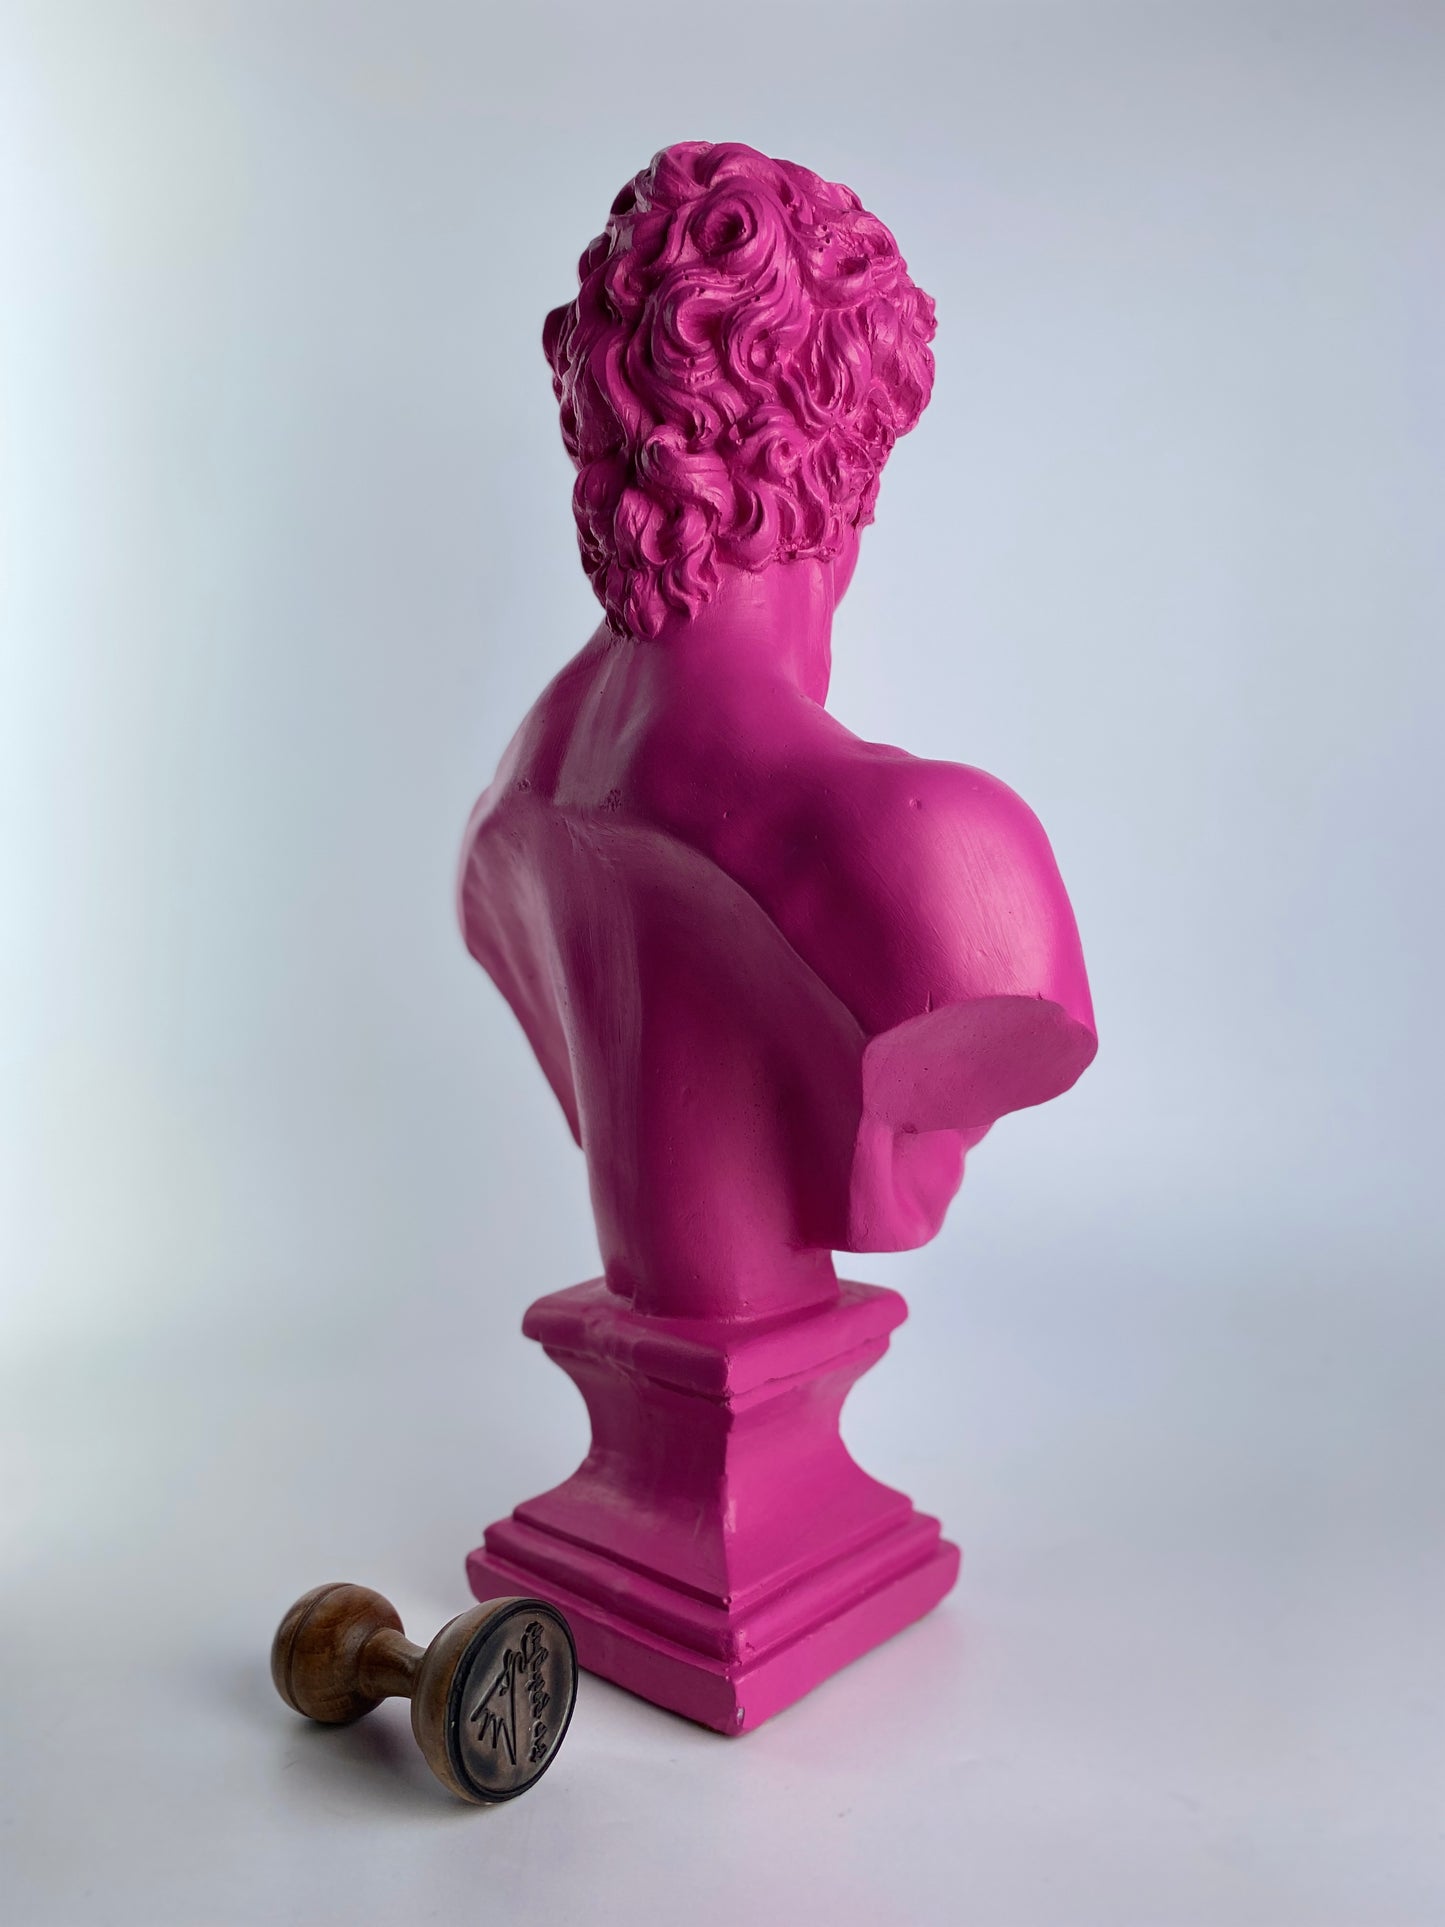 David 'Dark Pink' Pop Art Sculpture, Modern Home Decor, Large Sculpture